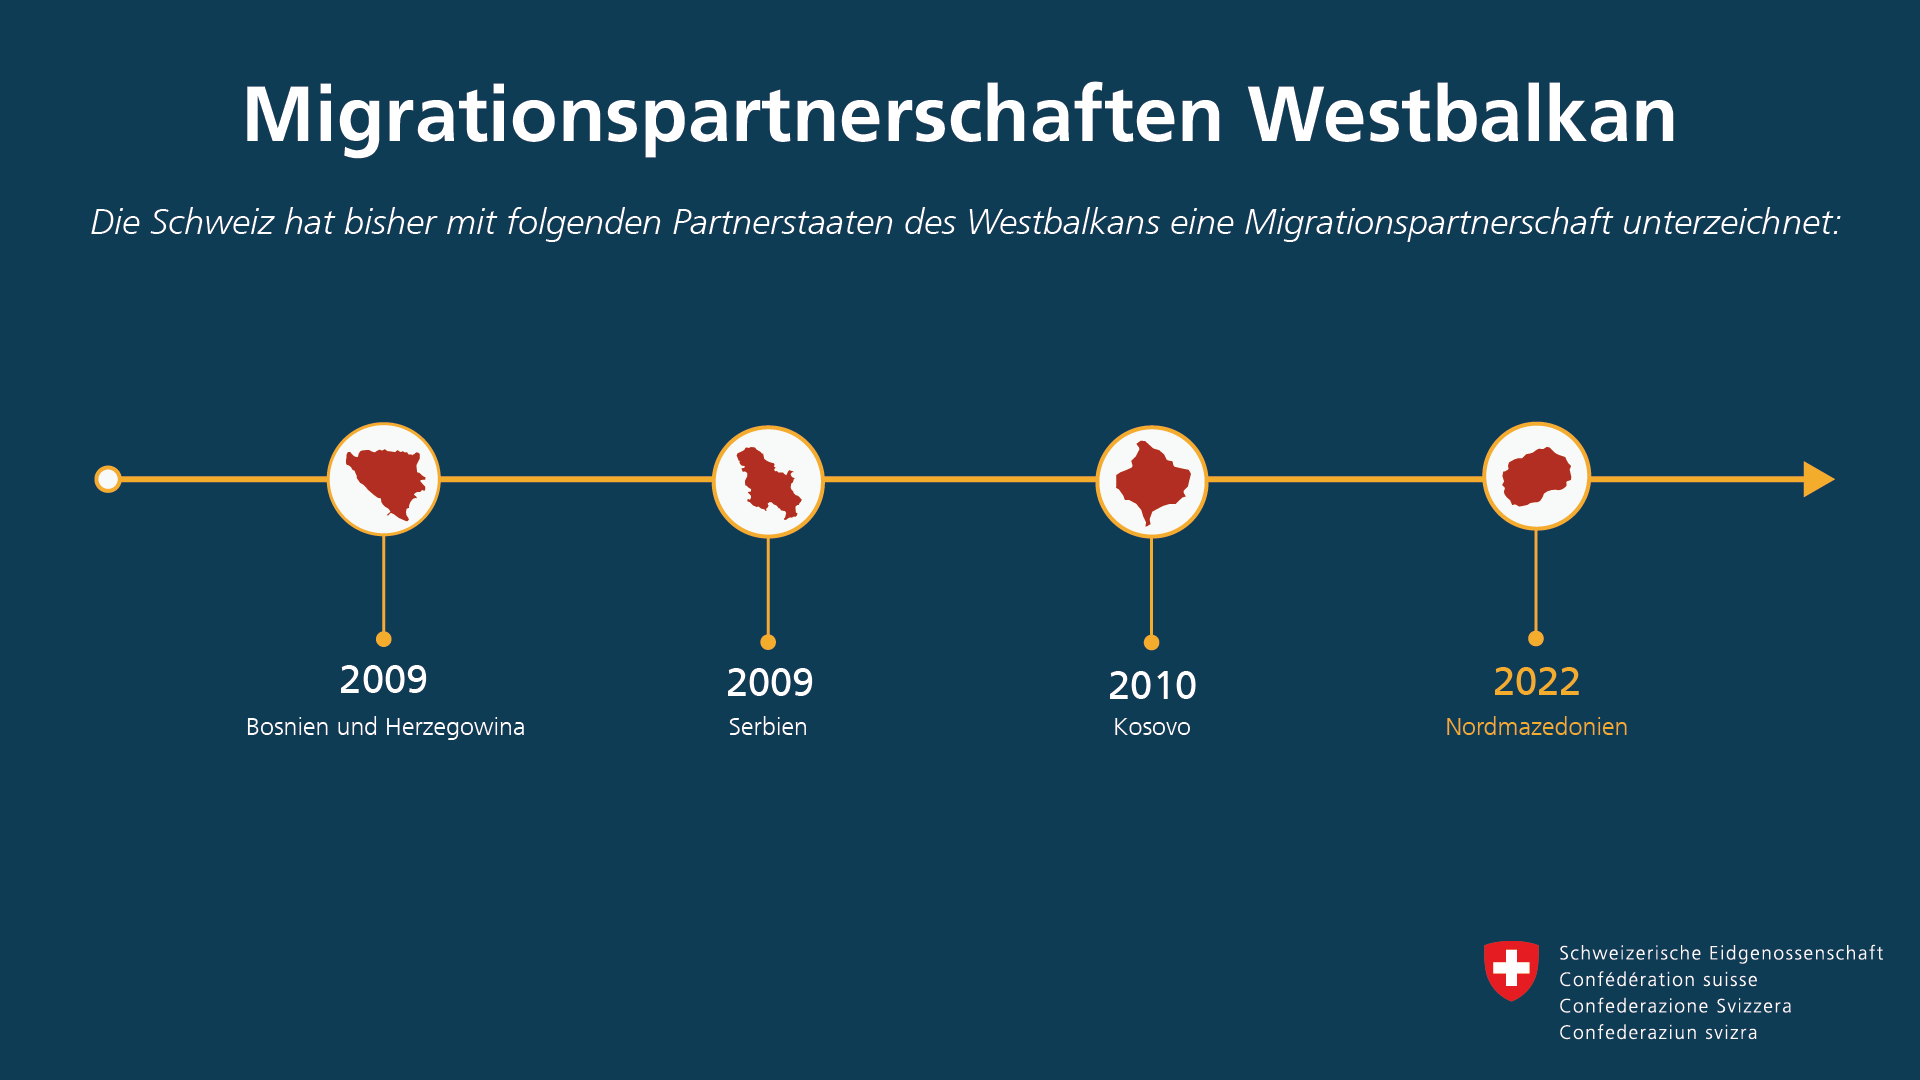 Infografik: Die Schweiz hat folgende Migrationspartnerschaften mit Staaten des Westbalkans unterzeichnet: 2009 Bosnien und Herzegowina, 2009 Serbien, 2010 Kosovo, 2022 Nordmazedonien